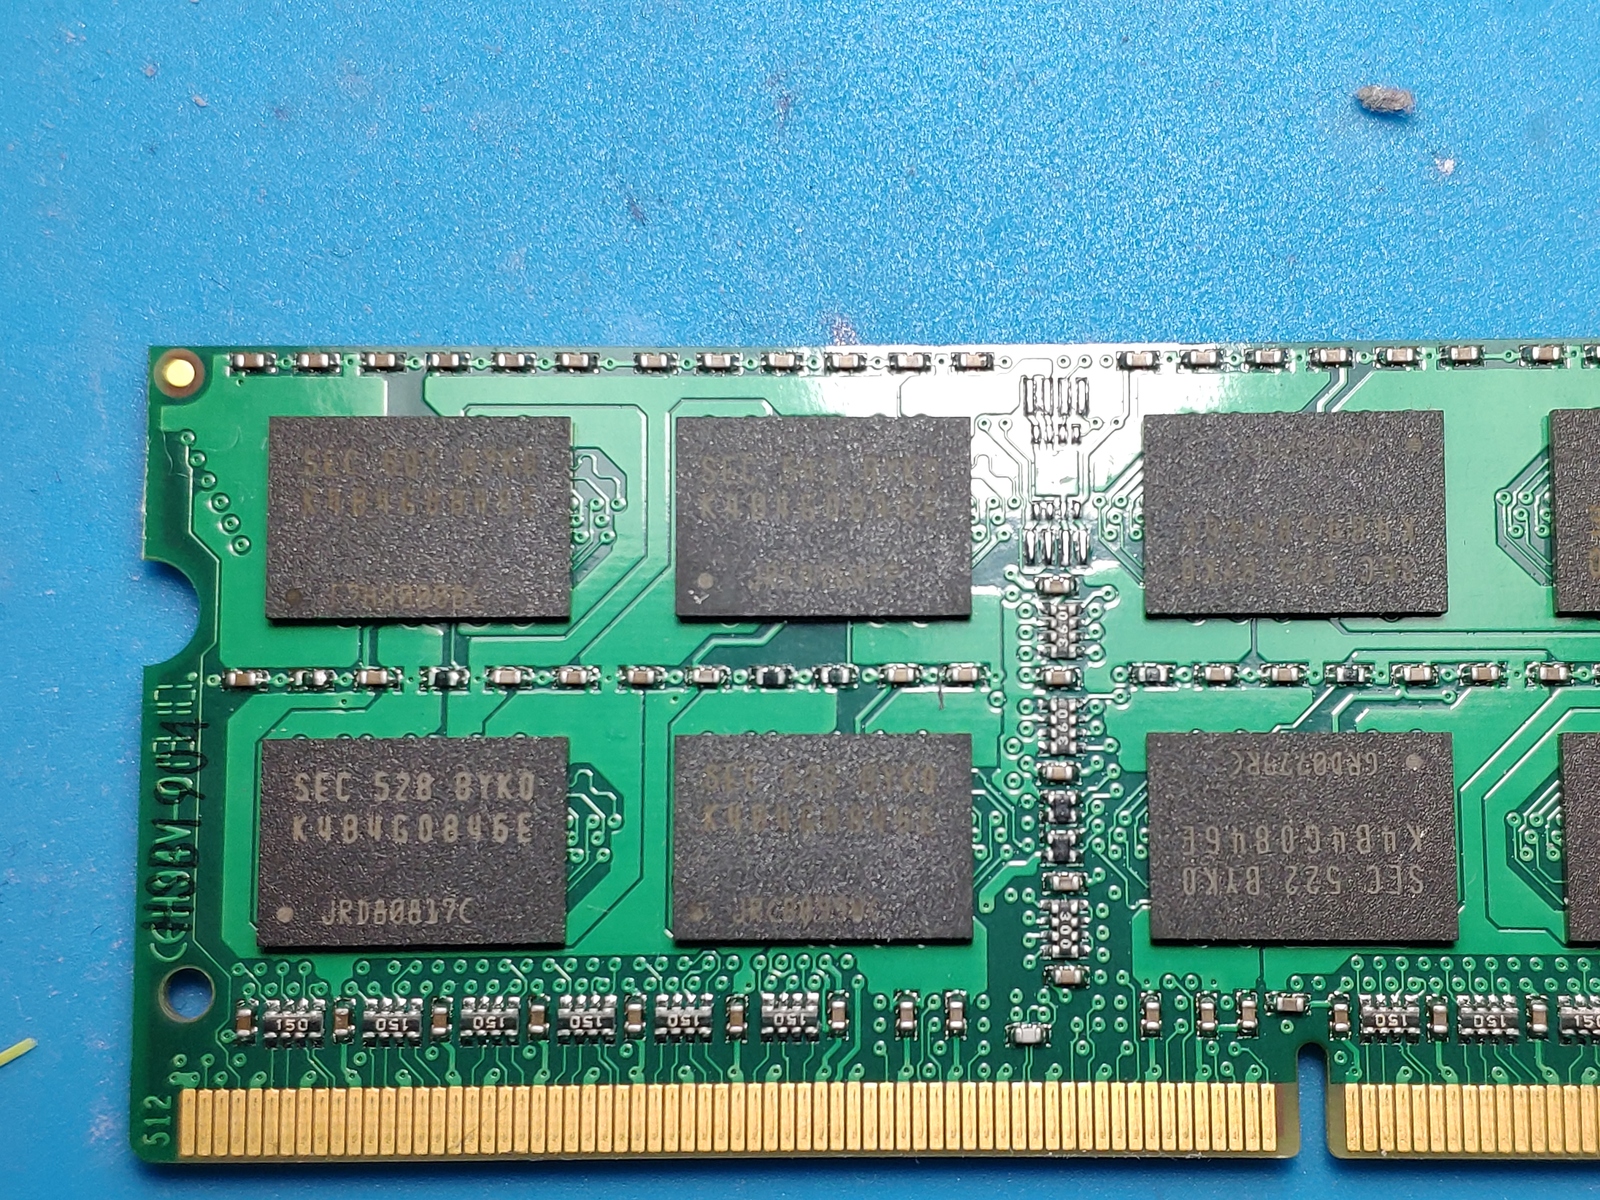 6 6 6 15 оперативная память. Оперативная память sec k4a8g8. Переделка планки памяти ddr3. Sec k482g08. Оперативная память 1.35v и 1.5v совместимость.